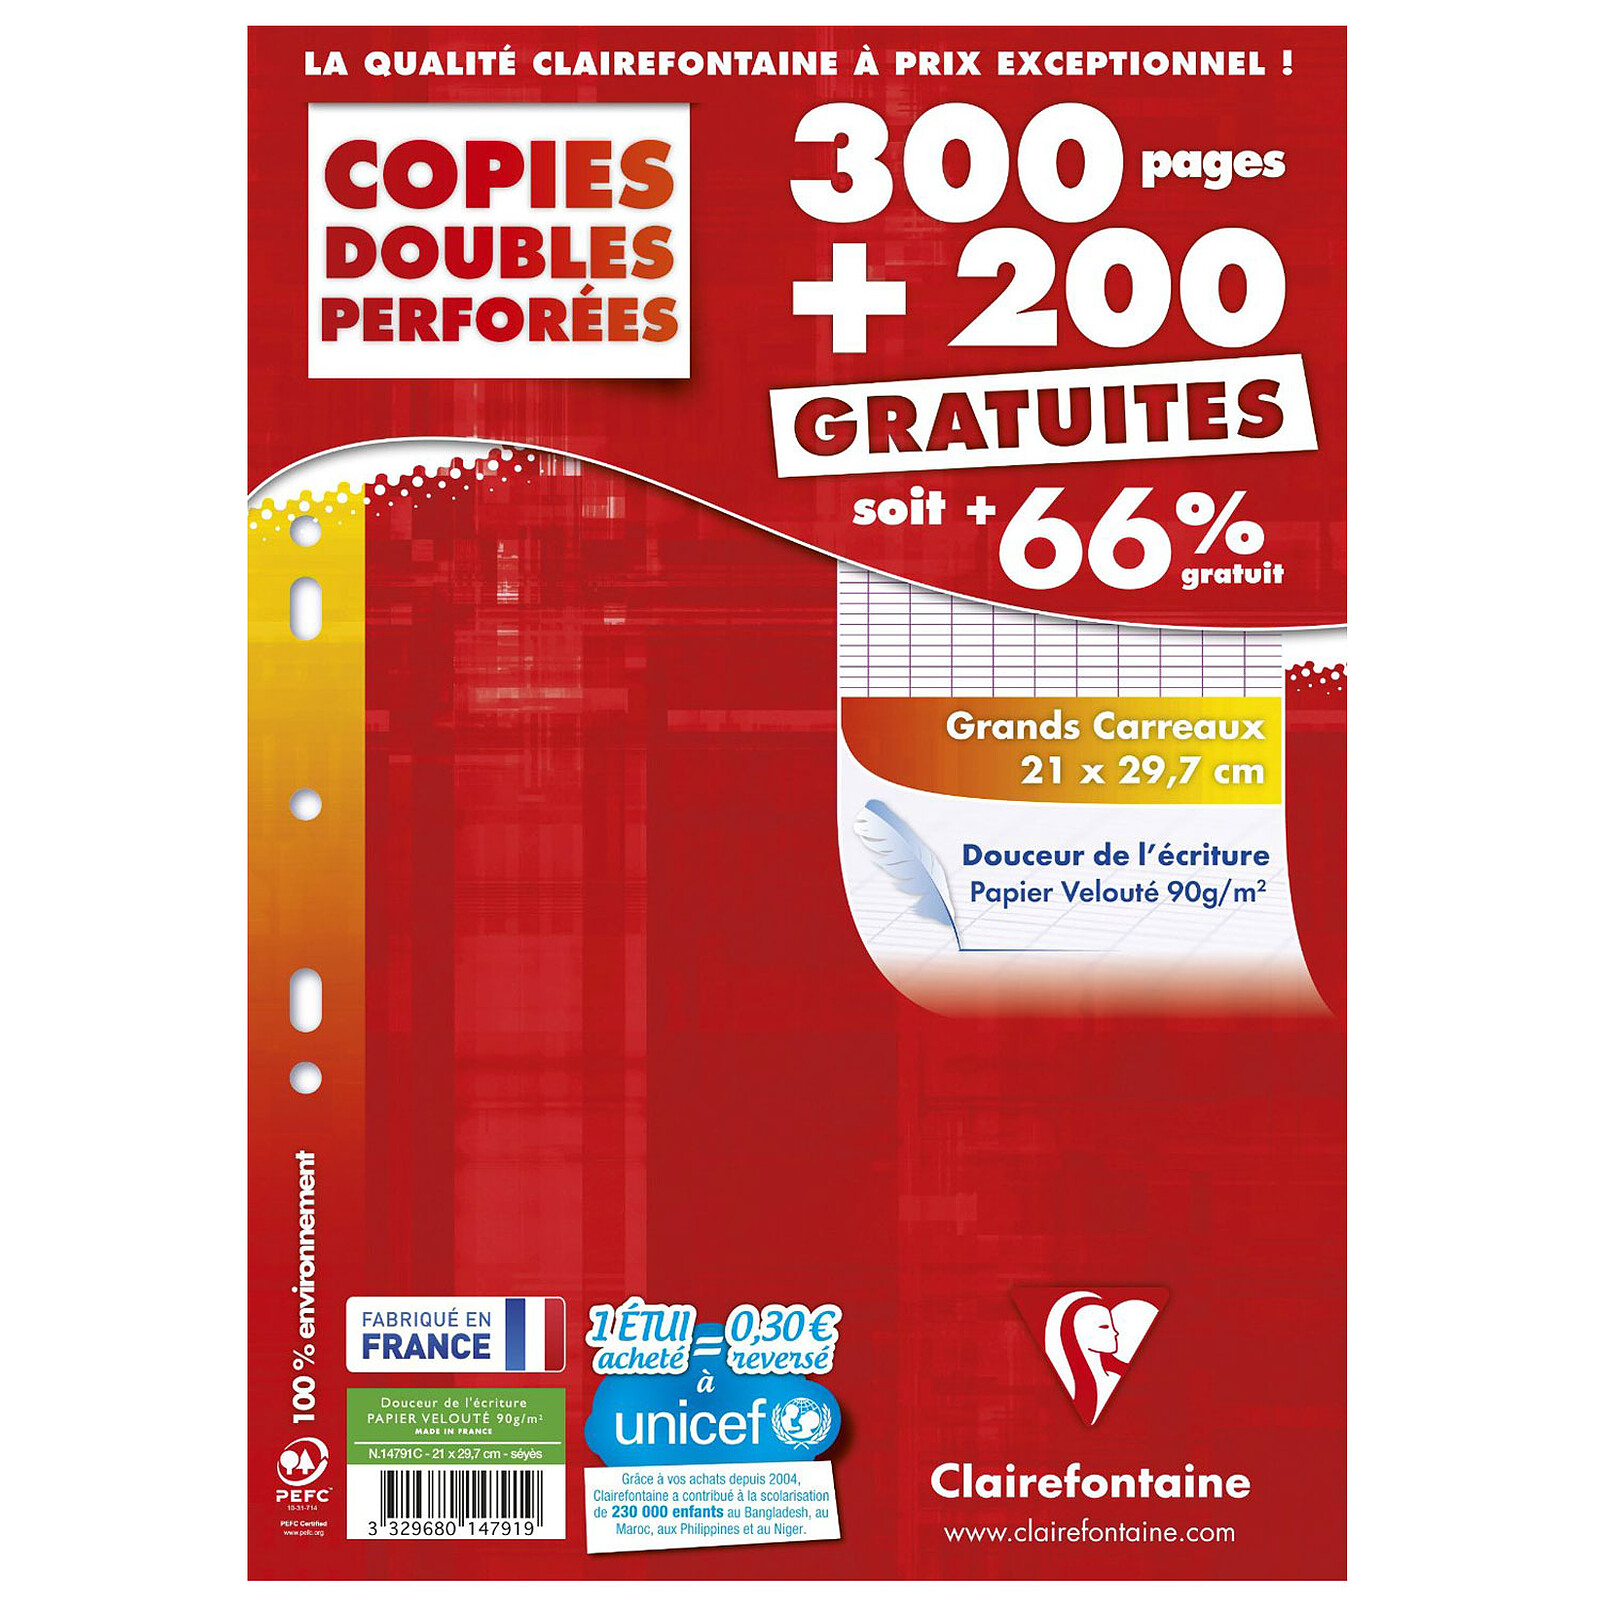 Clairefontaine Copies doubles perforées 300 pages + 200 GRATUITES A4 grands  carreaux Séyès - Papier spécifique - LDLC